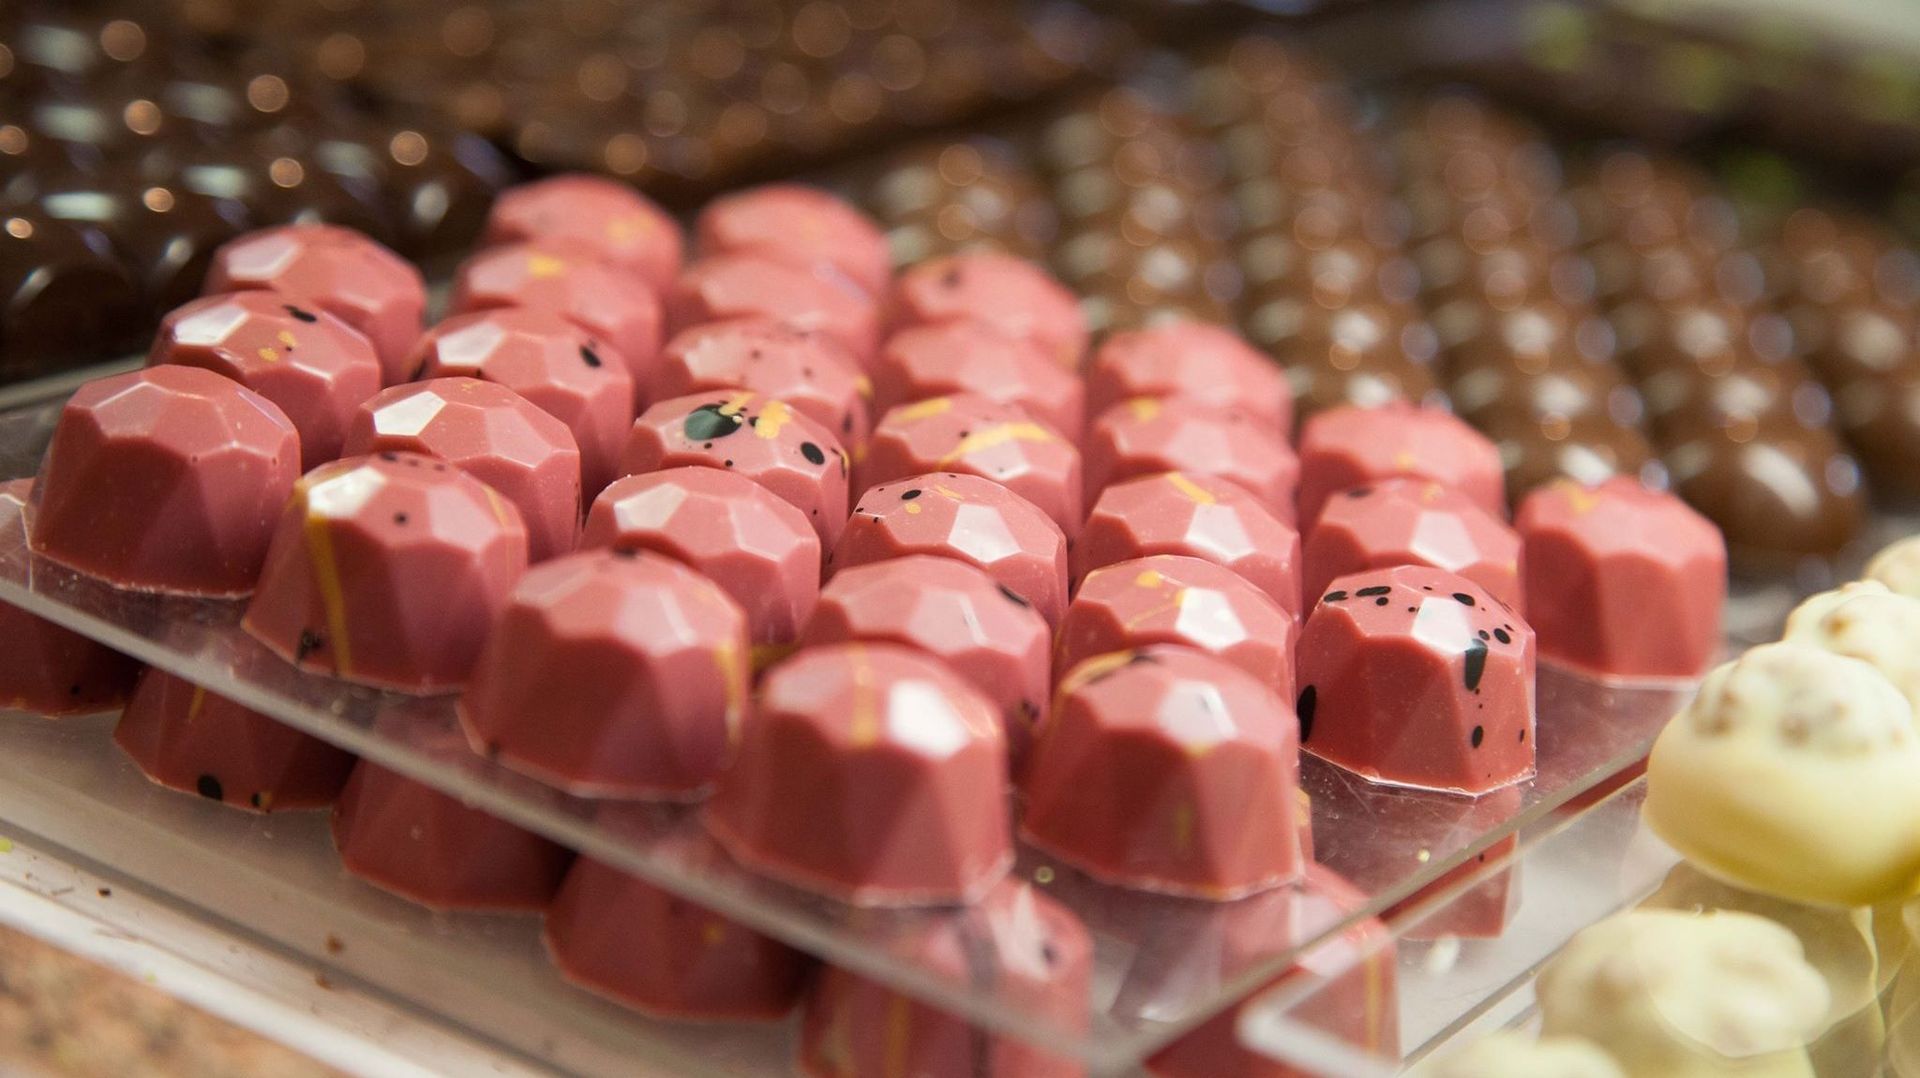 Le chocolat rose 'Ruby' a été présenté en Belgique jeudi 